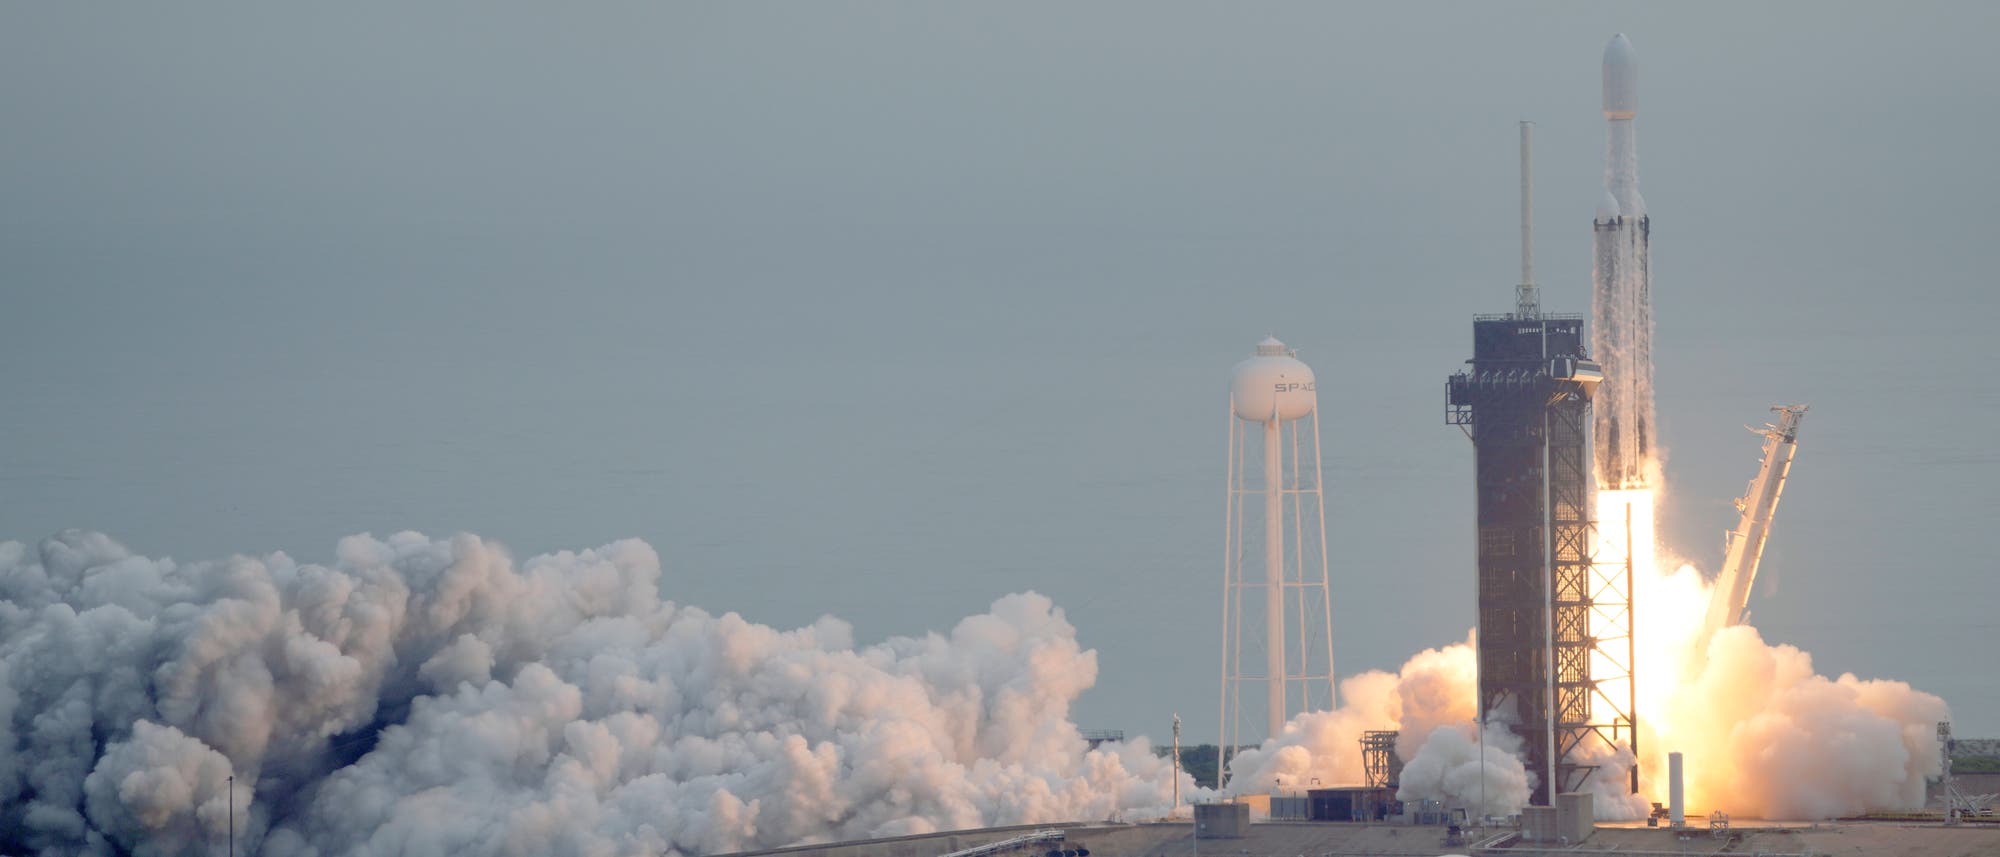 Die Rakete Falcon Heavy hebt vom Raumfahrtbahnhof  Kennedy Space Center in Florida ab. Der Himmel ist grau, der Raketentreibstoff verbrennt orange, links im Bild sieht man Wolken des verbrannten Treibstoffs